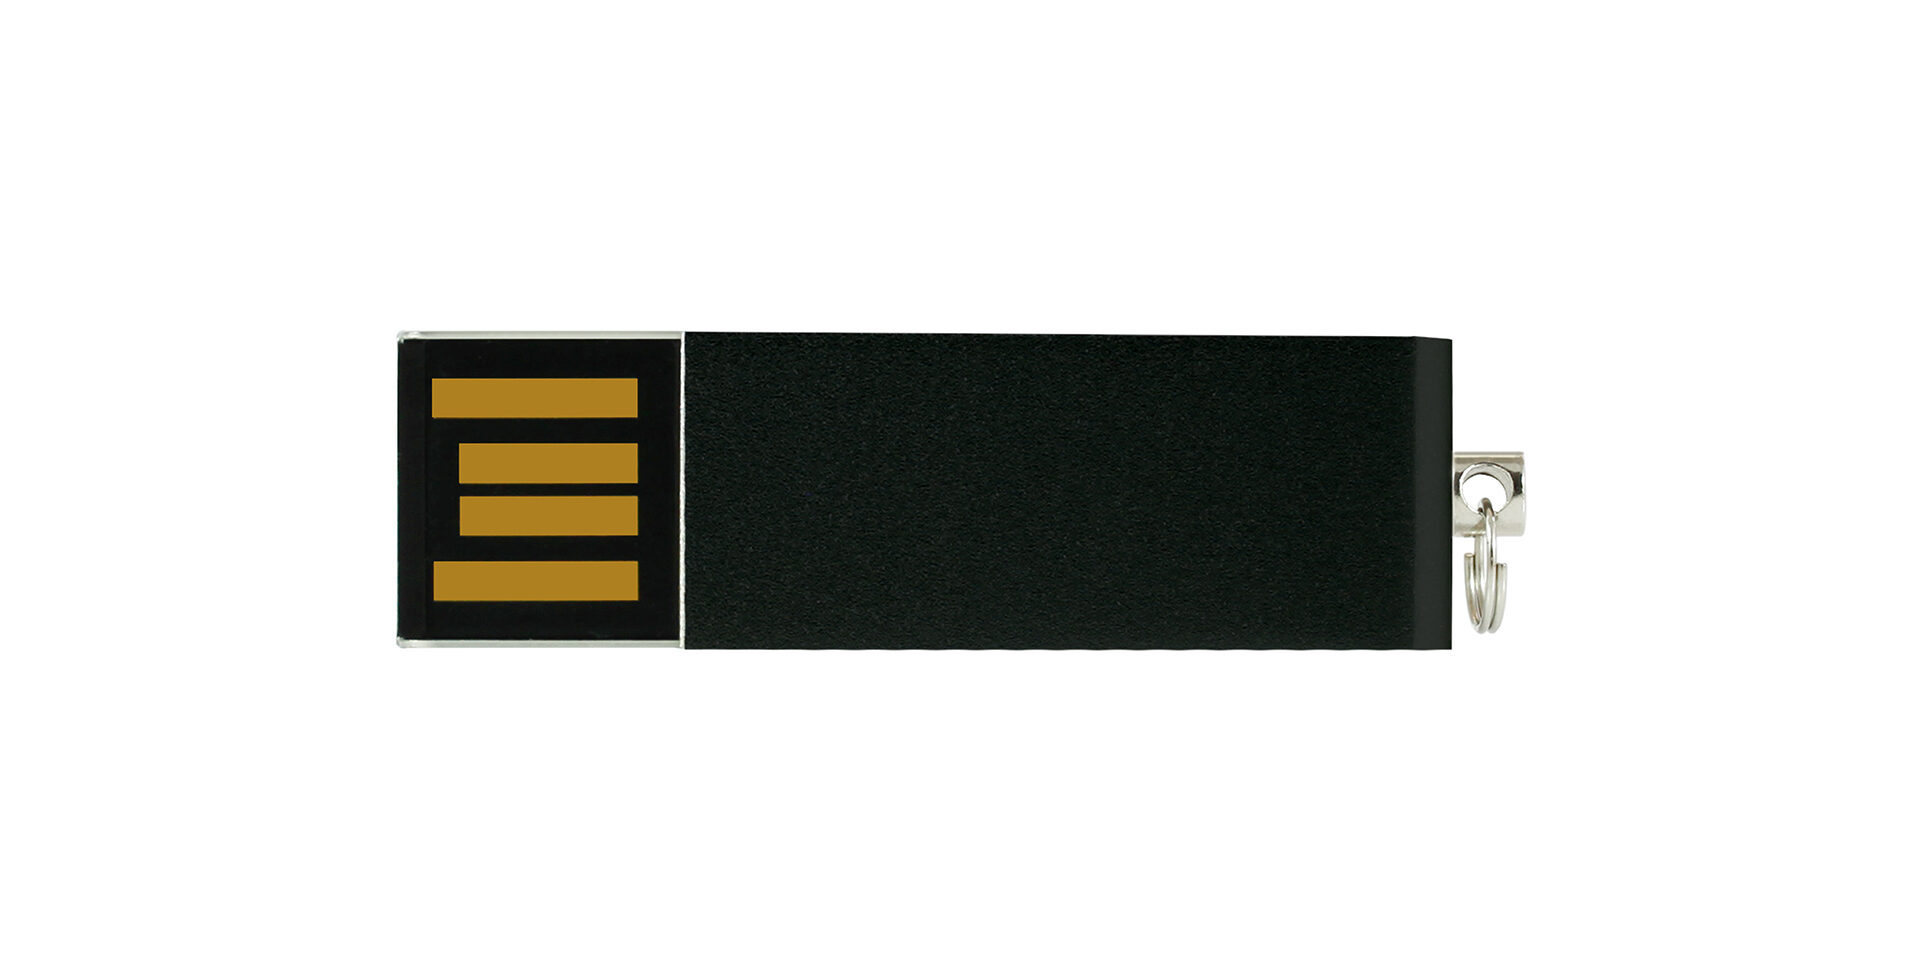 USB UCU marki Goodram